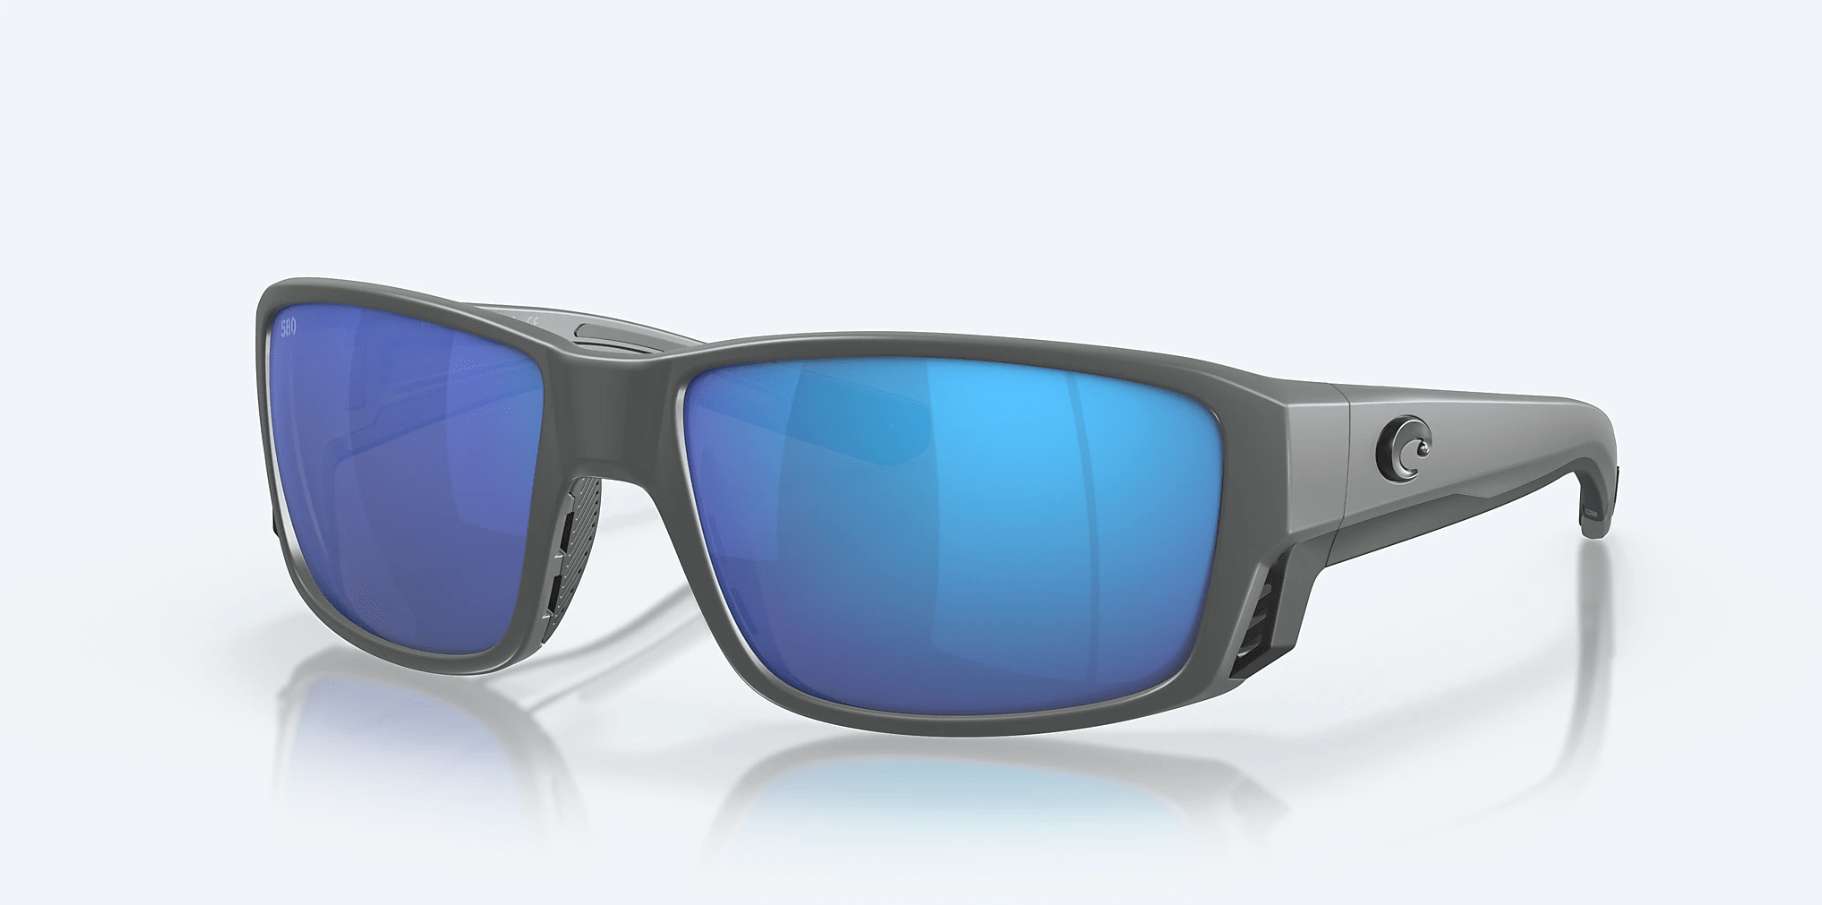 https://www.russells.com/cdn/shop/products/costa-del-mar-sunglasses-gray-blue-mirror-costa-del-mar-tuna-alley-pro-gray-frame-blue-mirror-lens-sunglasses-35467219501214_5000x.png?v=1676997304